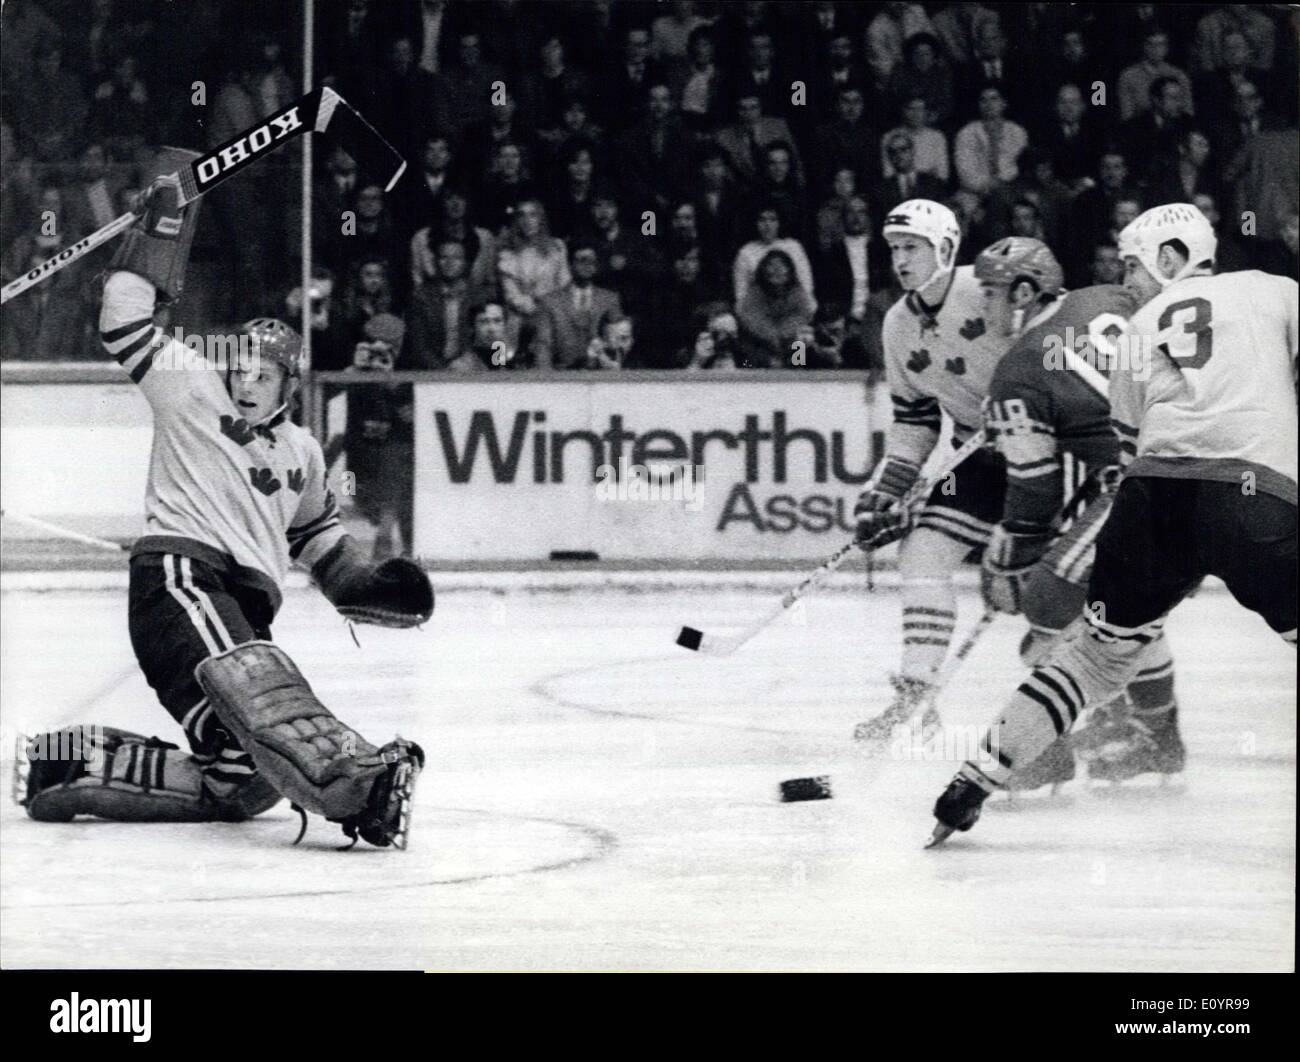 Apr. 03, 1971 - Unione Sovietica vince campione del mondo nave: a Ginevra (Svizzera) Unione Sovietica ha vinto il campionato mondiale di hockey su ghiaccio per la DECIMA volta. La foto mostra il punteggio Starshinov primo obiettivo nell'ultimo match contro la Svezia. Foto Stock